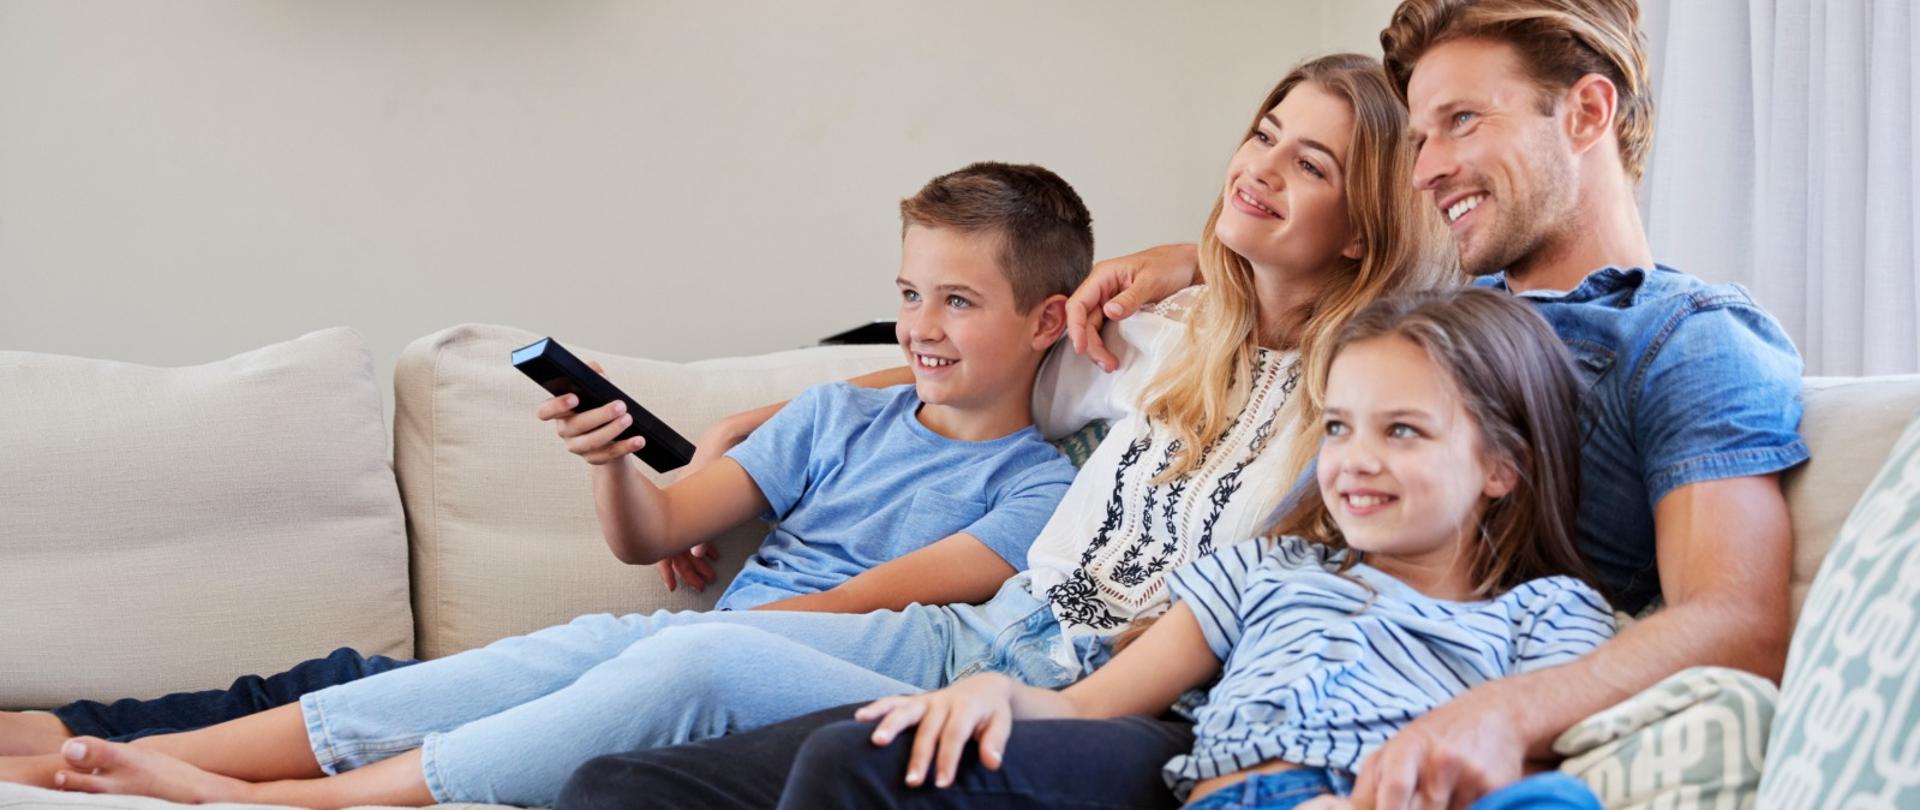 Uśmiechnięta rodzina z dwójką kilkuletnich dzieci na kanapie. Chłopiec trzyma w dłoni telewizyjnego pilota.